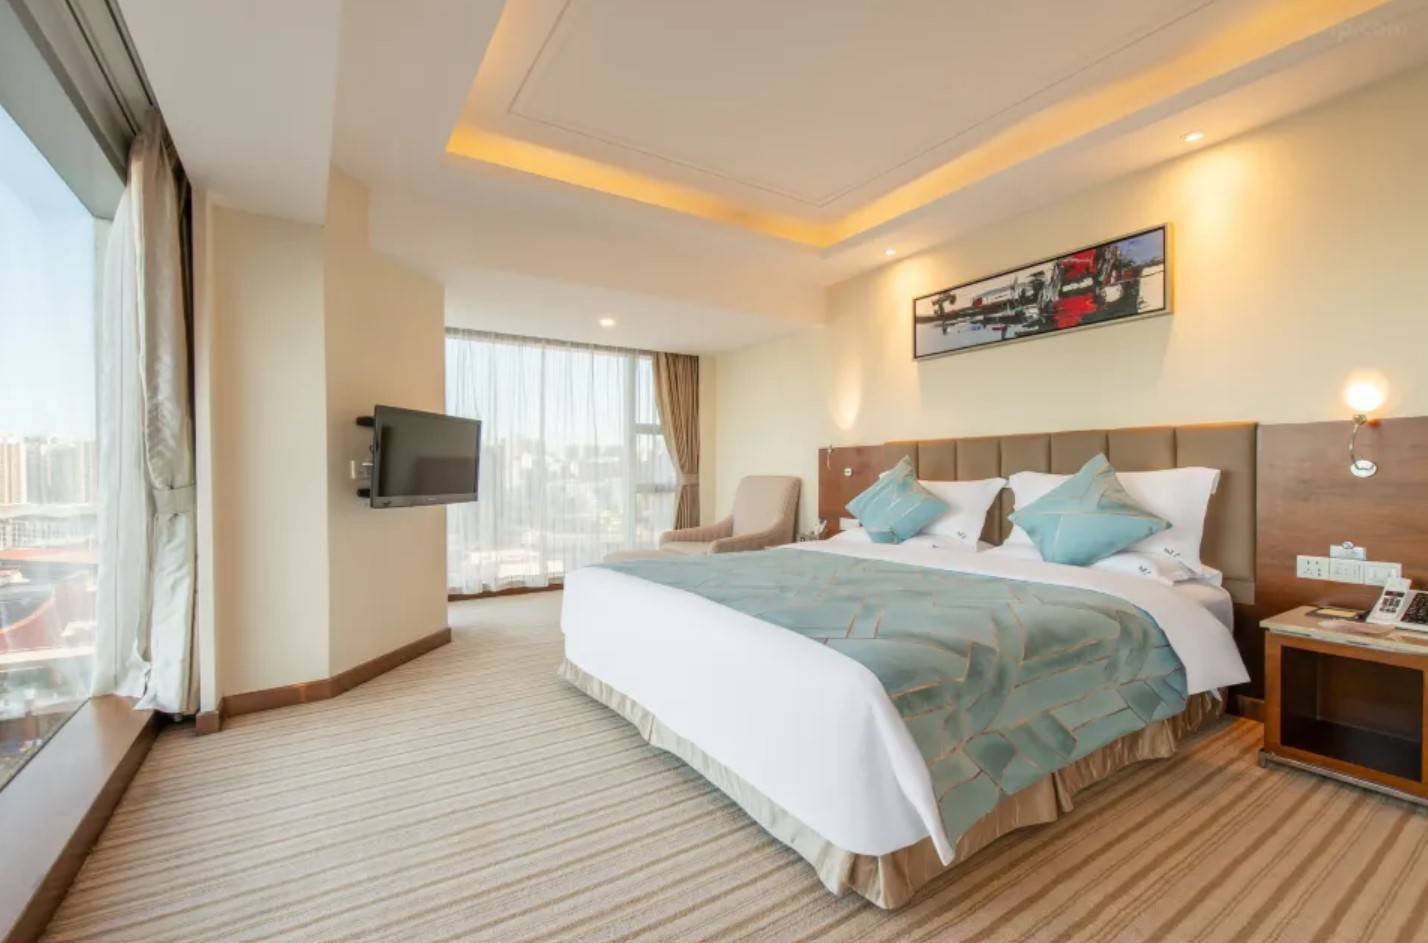 珠海酒店 酒店房間裝潢舒適高雅，15樓以上的高層房間更能眺望珠海和澳門的壯麗城景。